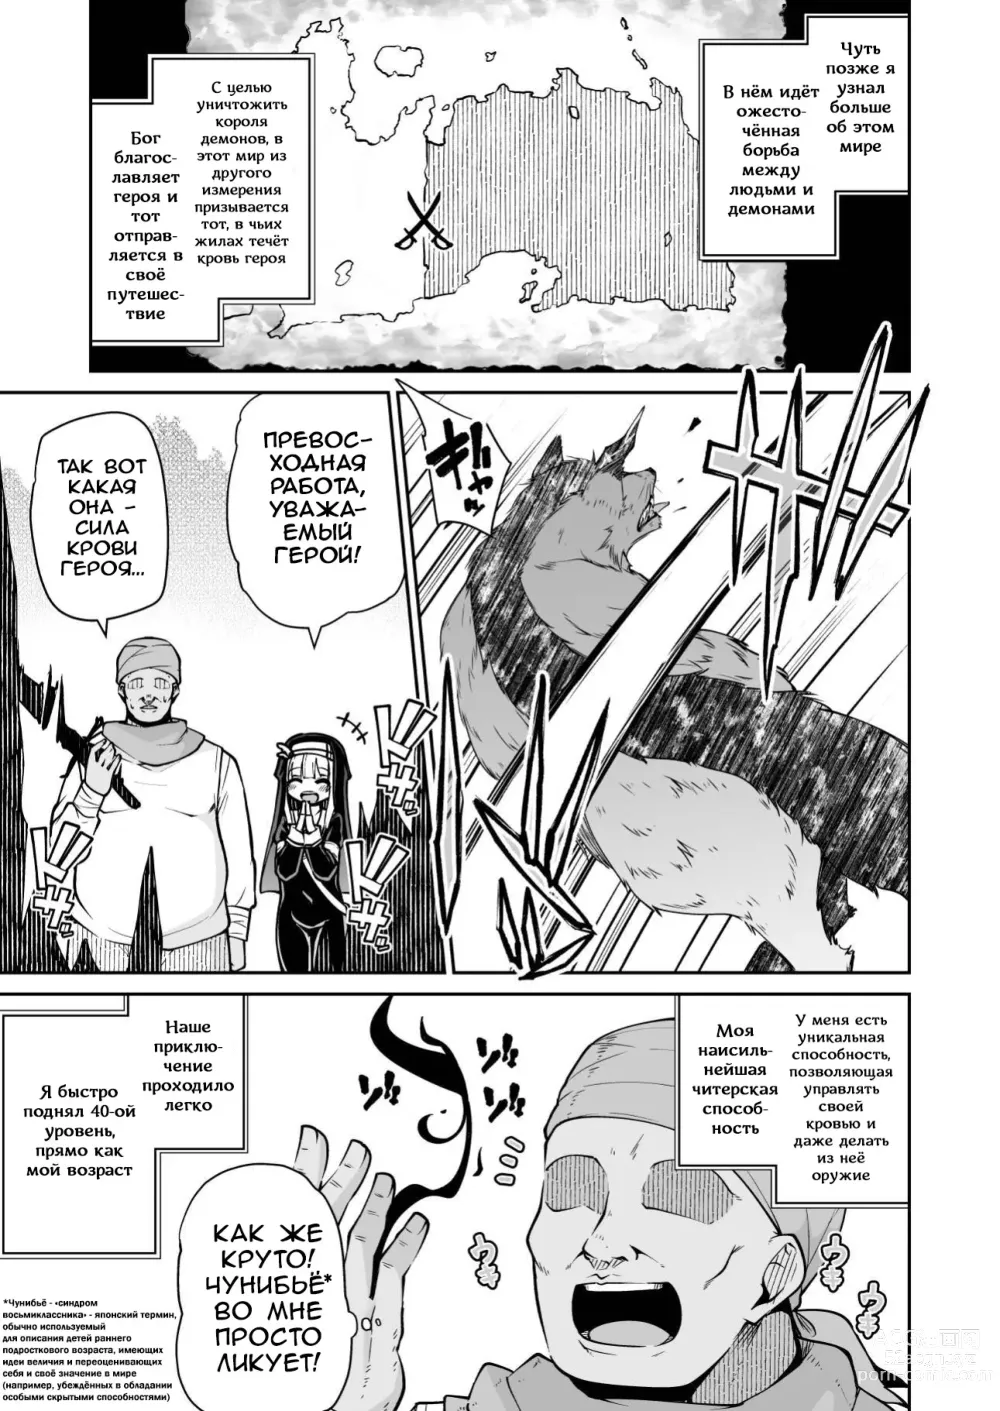 Page 8 of doujinshi Святая, Слайм и жалкий герой